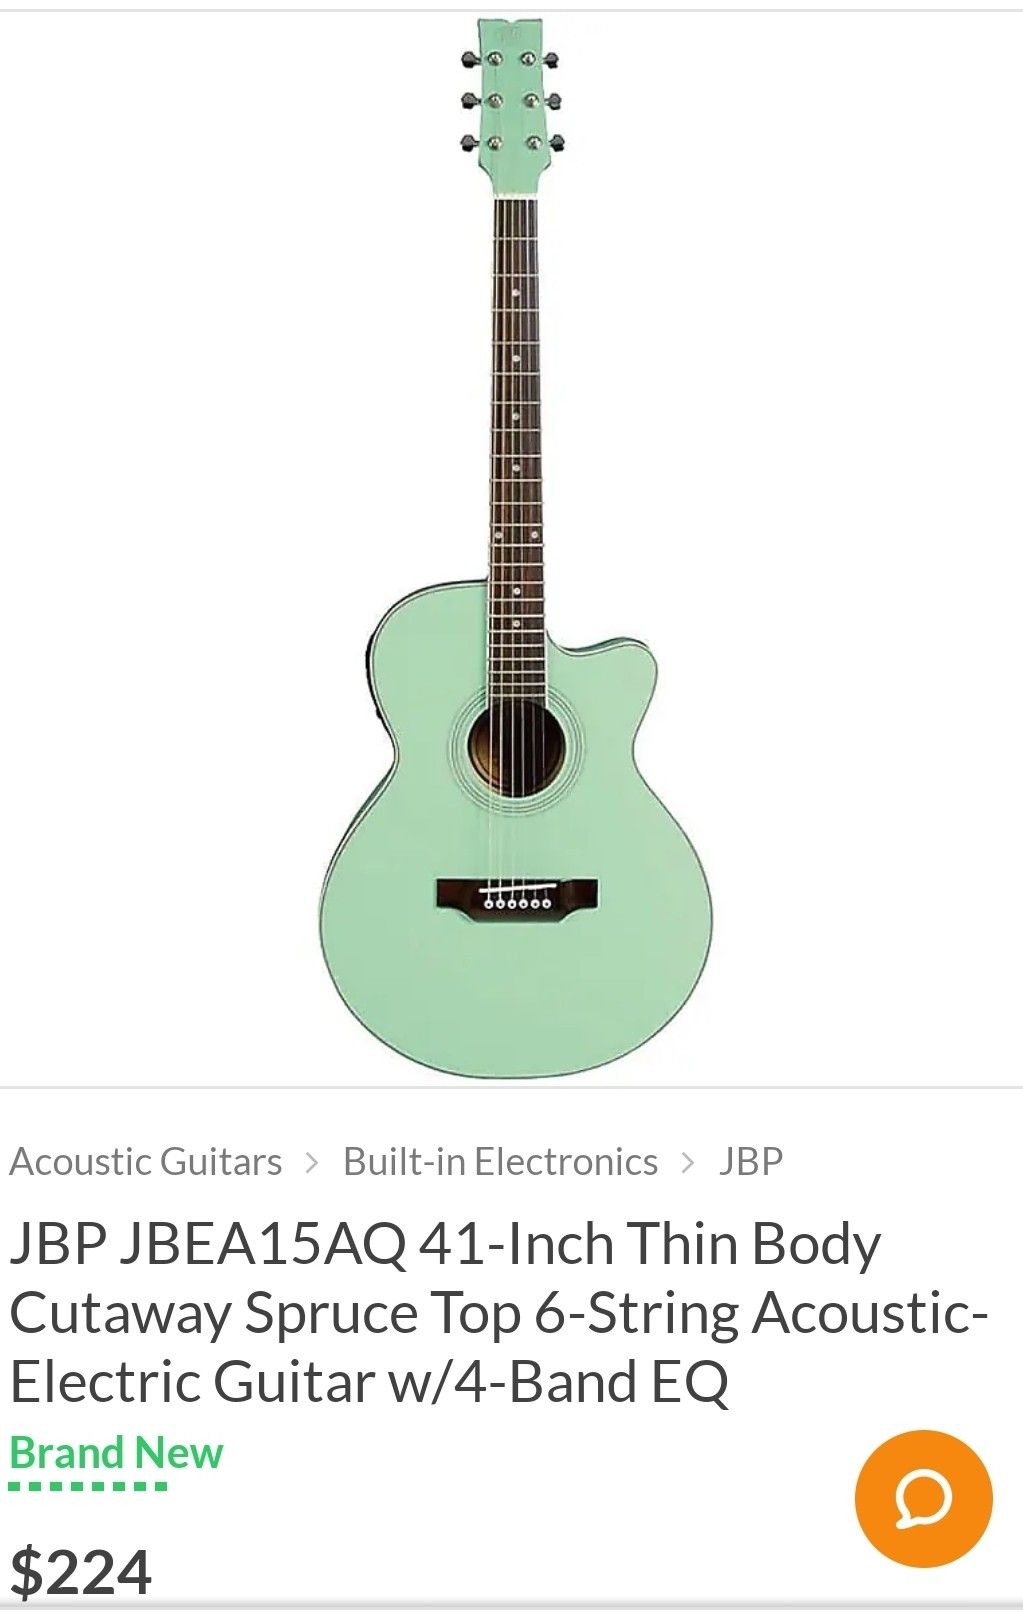 JBP Guitar